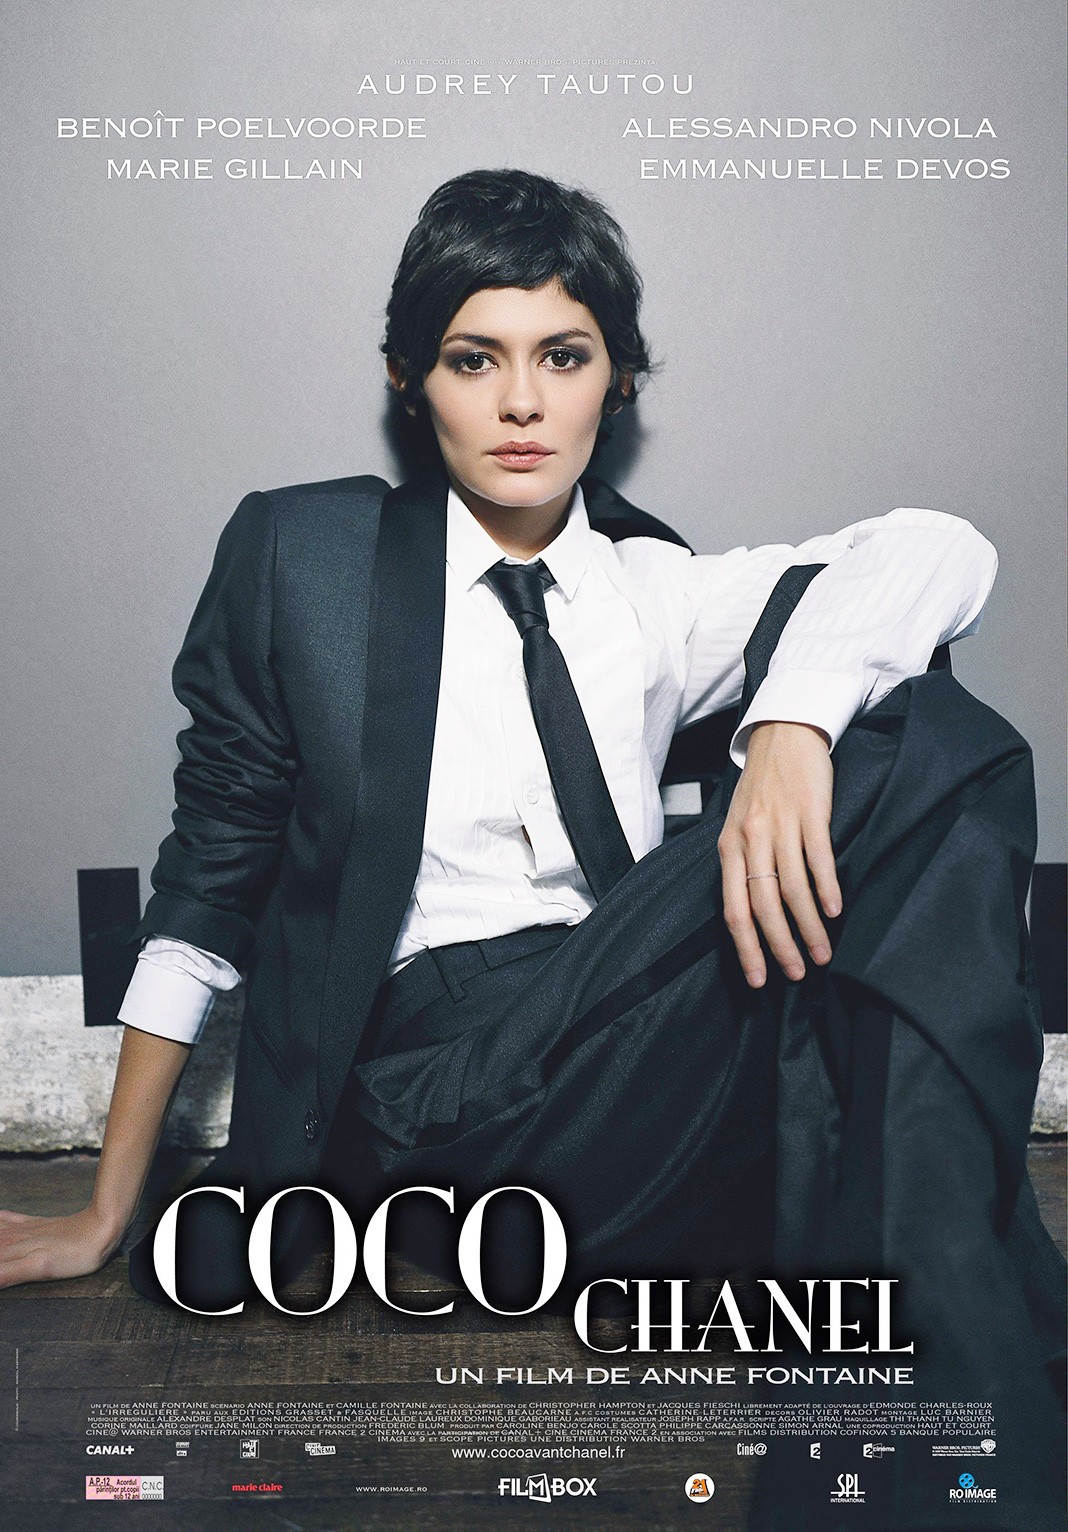 Афиша из фильма «Коко до Шанель» (Coco avant Chanel), 2009 г.